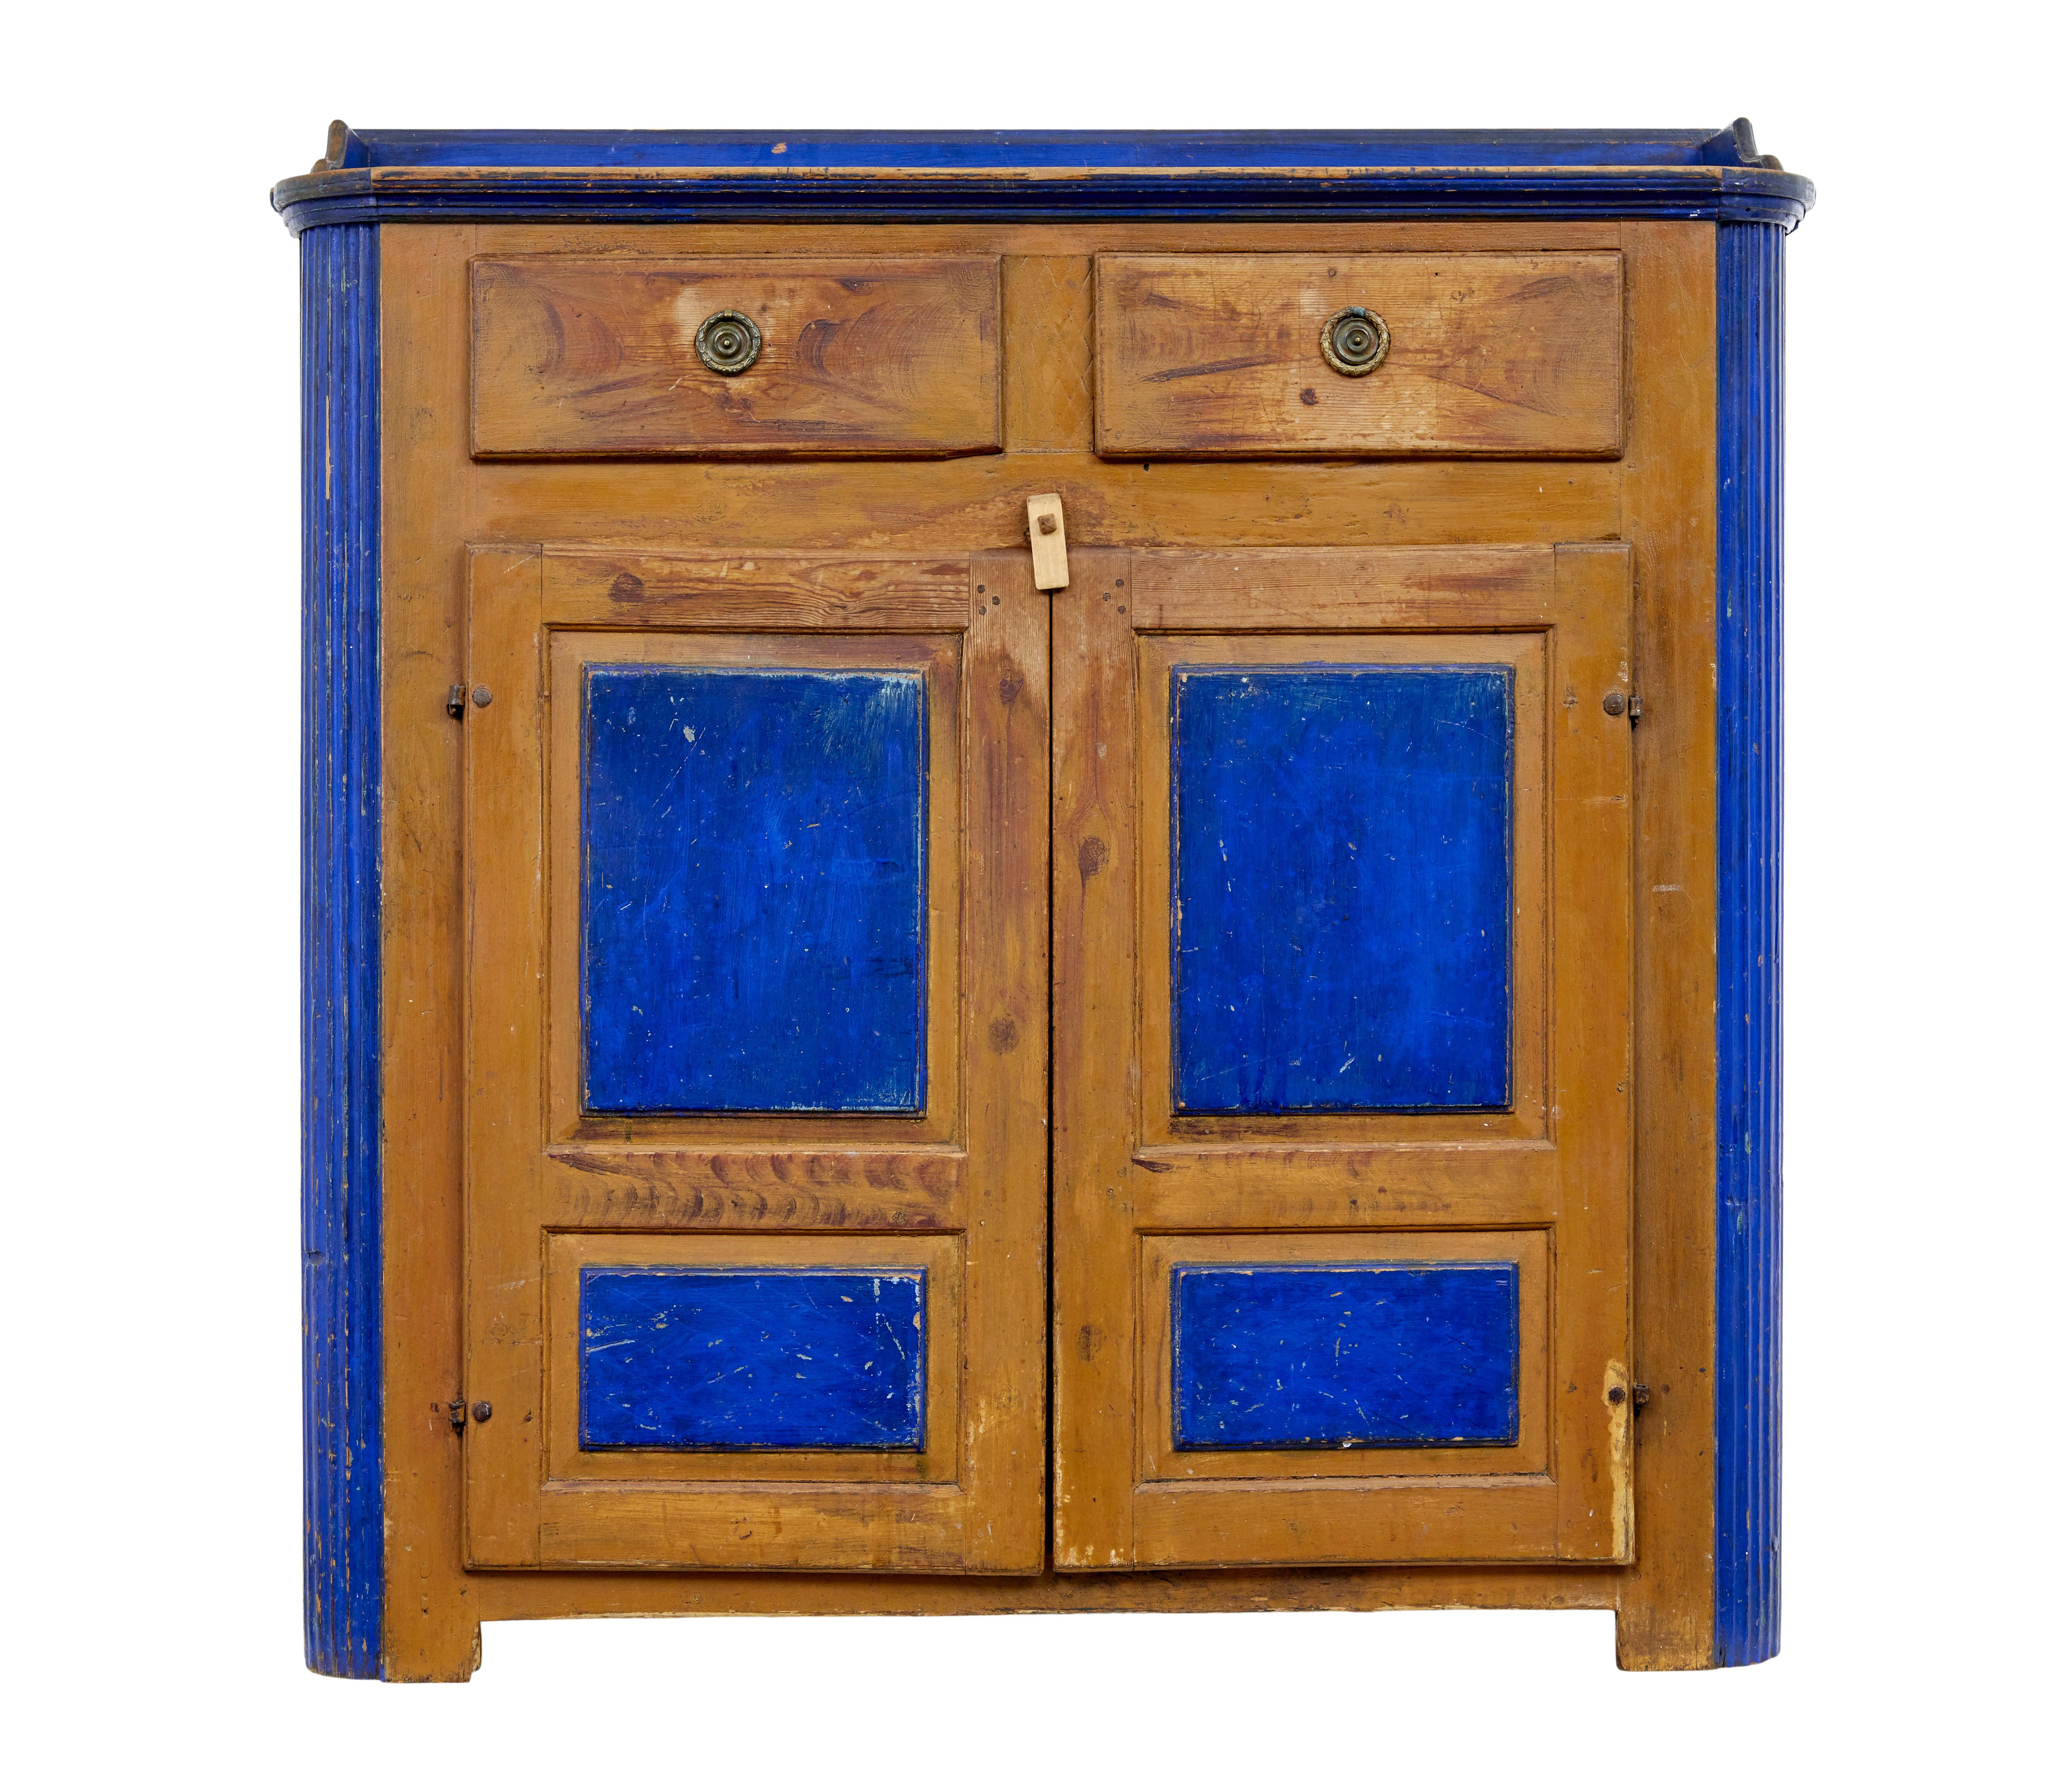 Armoire de cuisine en pin peint du 19e siècle, vers 1880.

Rare buffet en pin de bonne qualité.   Le dessus, les panneaux de porte et les côtés sont peints en bleu de cobalt.

Dessus avec galerie et tiroirs supérieurs en dessous.  Un placard à